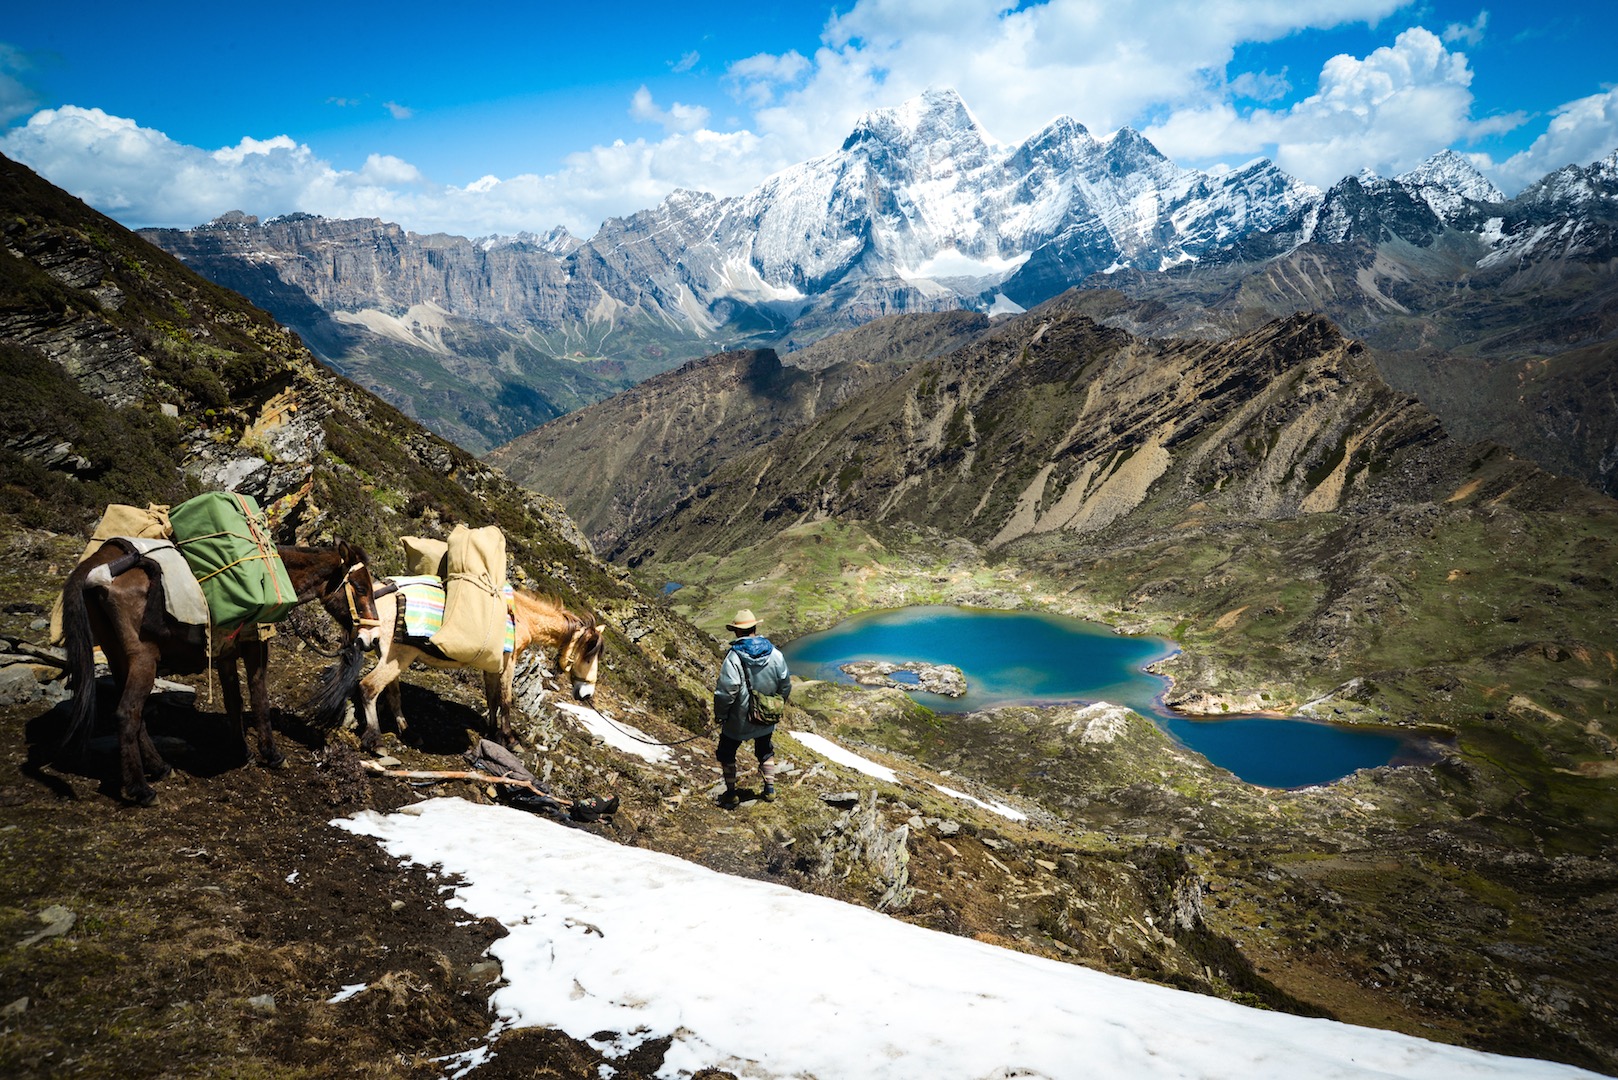 La caravane Liotard de Constatin de Slizewicz emmène ses clients jusqu'au lac d'Aboudje à 4 400 mètres d'altitude sur le plateau tibétain du Yunnan, près de Shangri-La. (Copyright : Thomas Goisque)